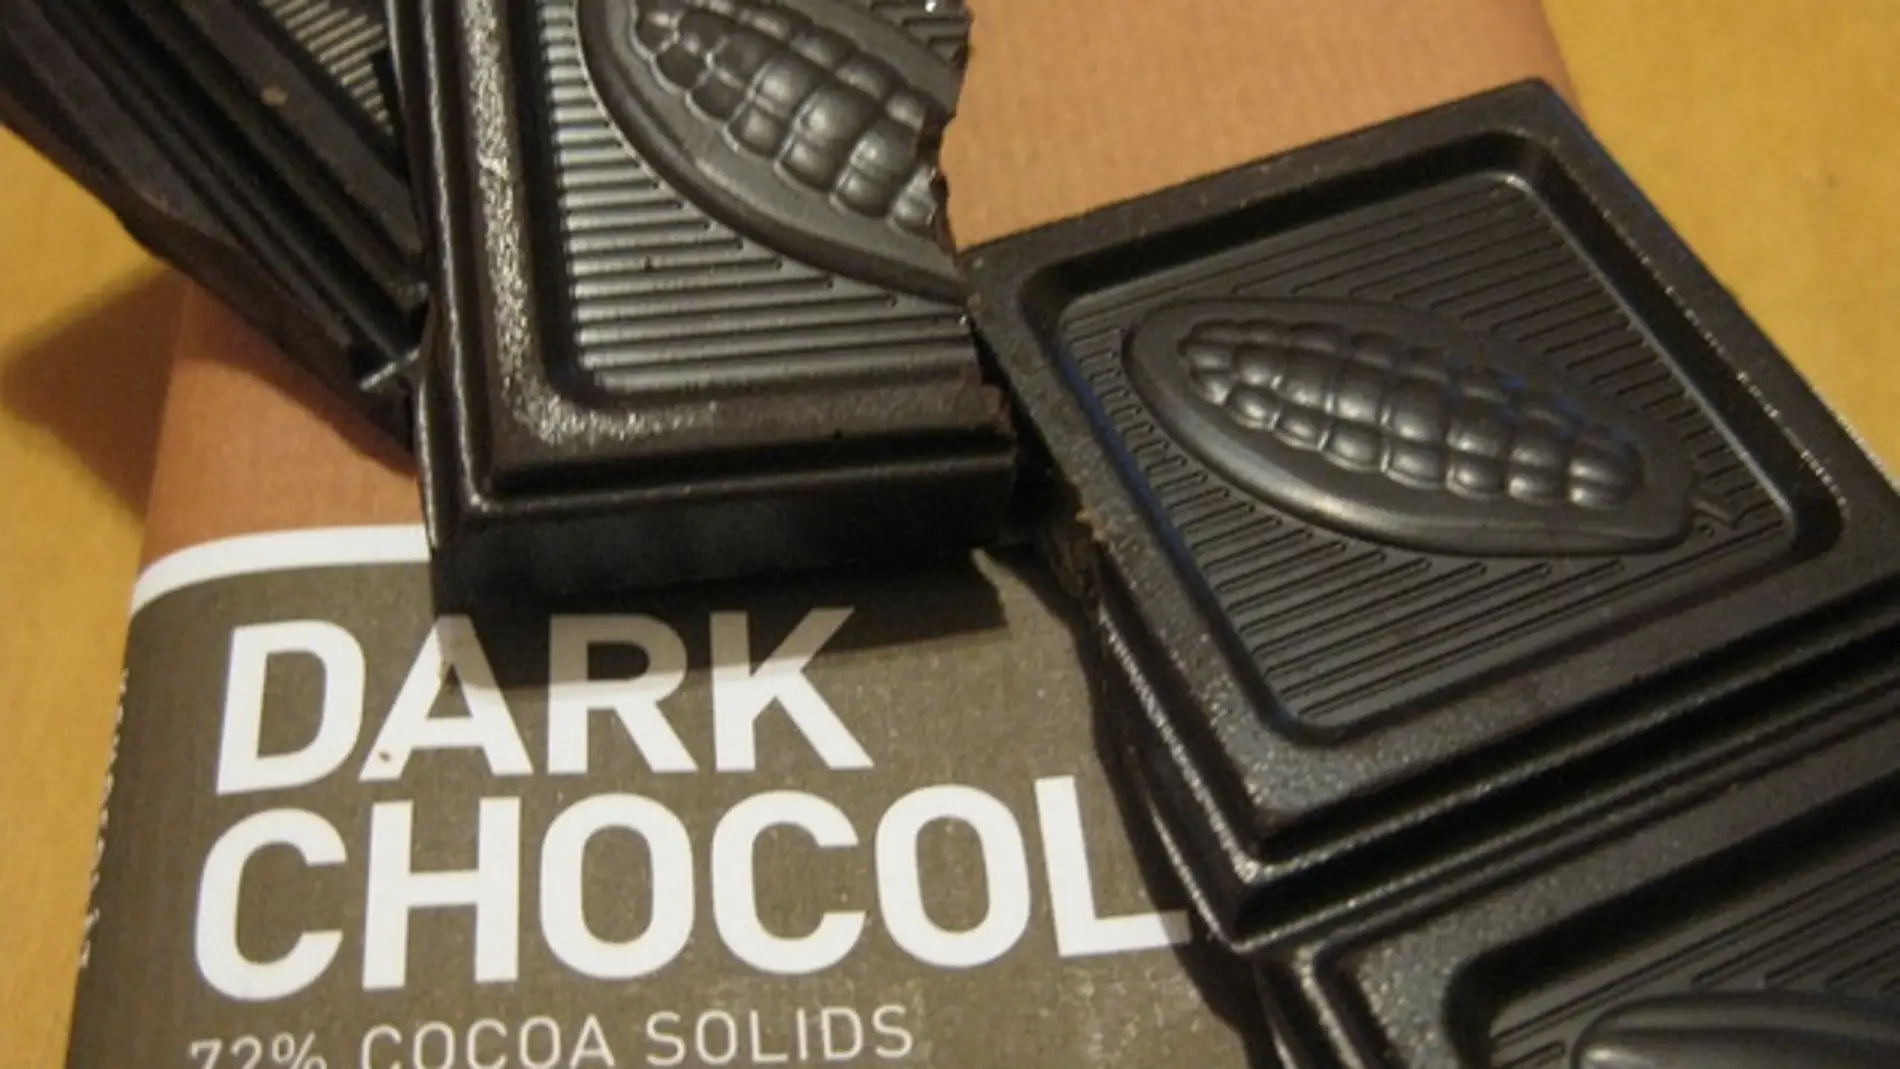 El chocolate negro es una gran pasión y puede ser un aliado de la salud